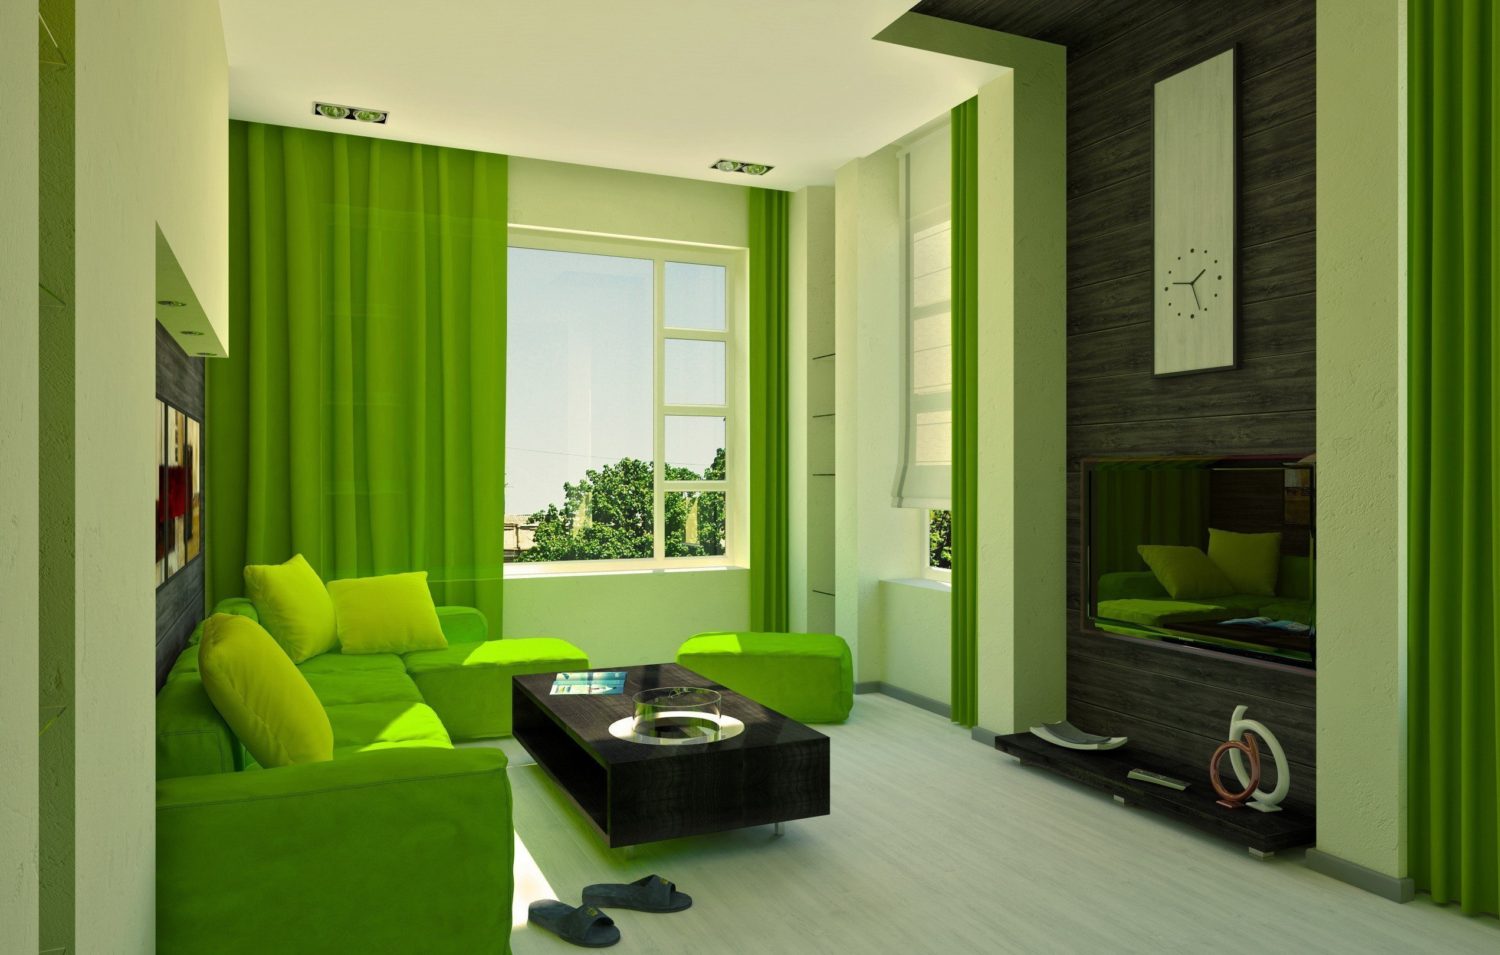 غرفة المعيشة في الصورة الداخلية الخضراء